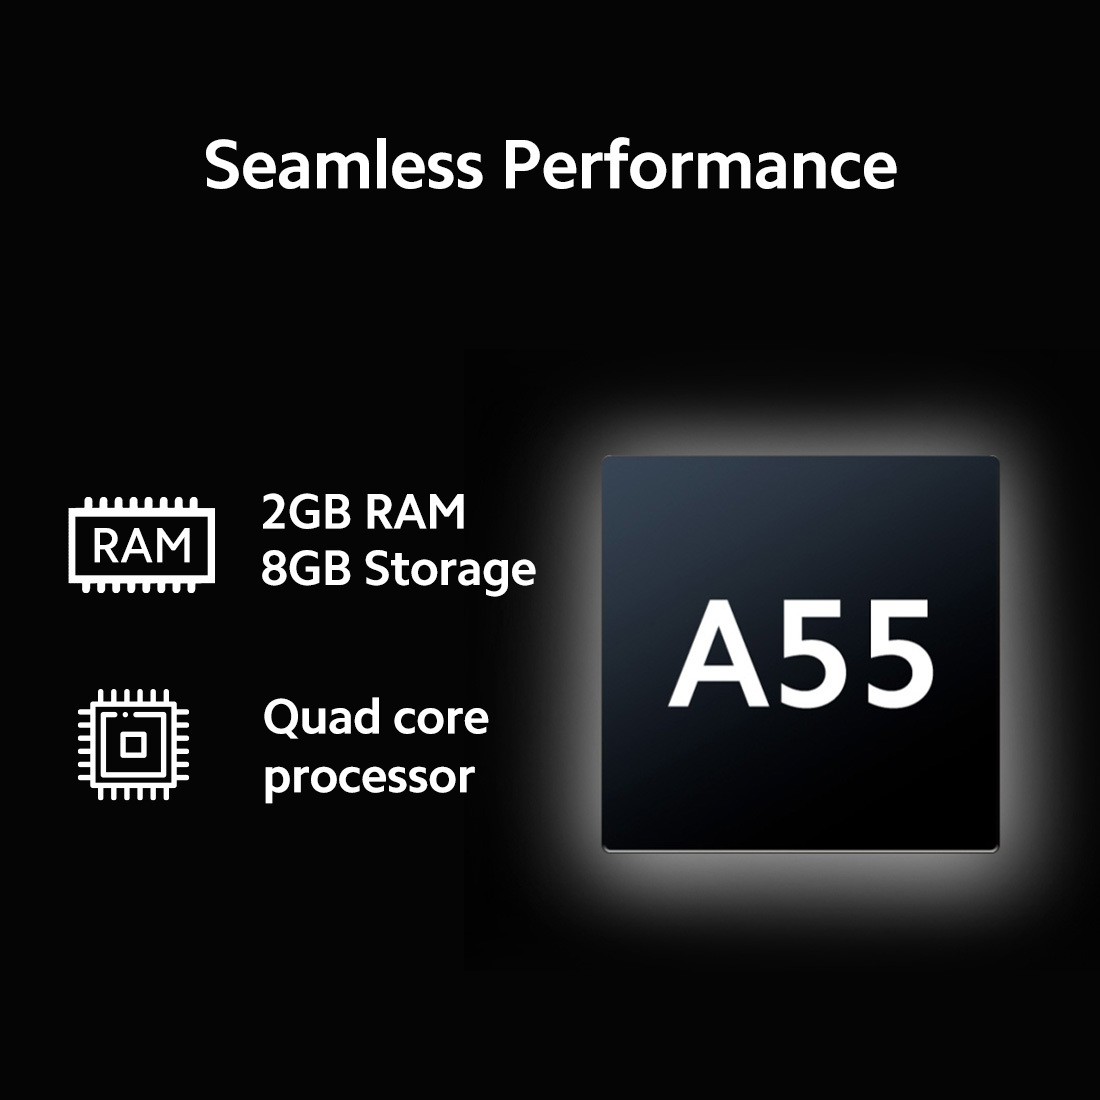 Xiaomi  X Series (55 inch) Ultra HD (4K) (L55M7-A2IN)